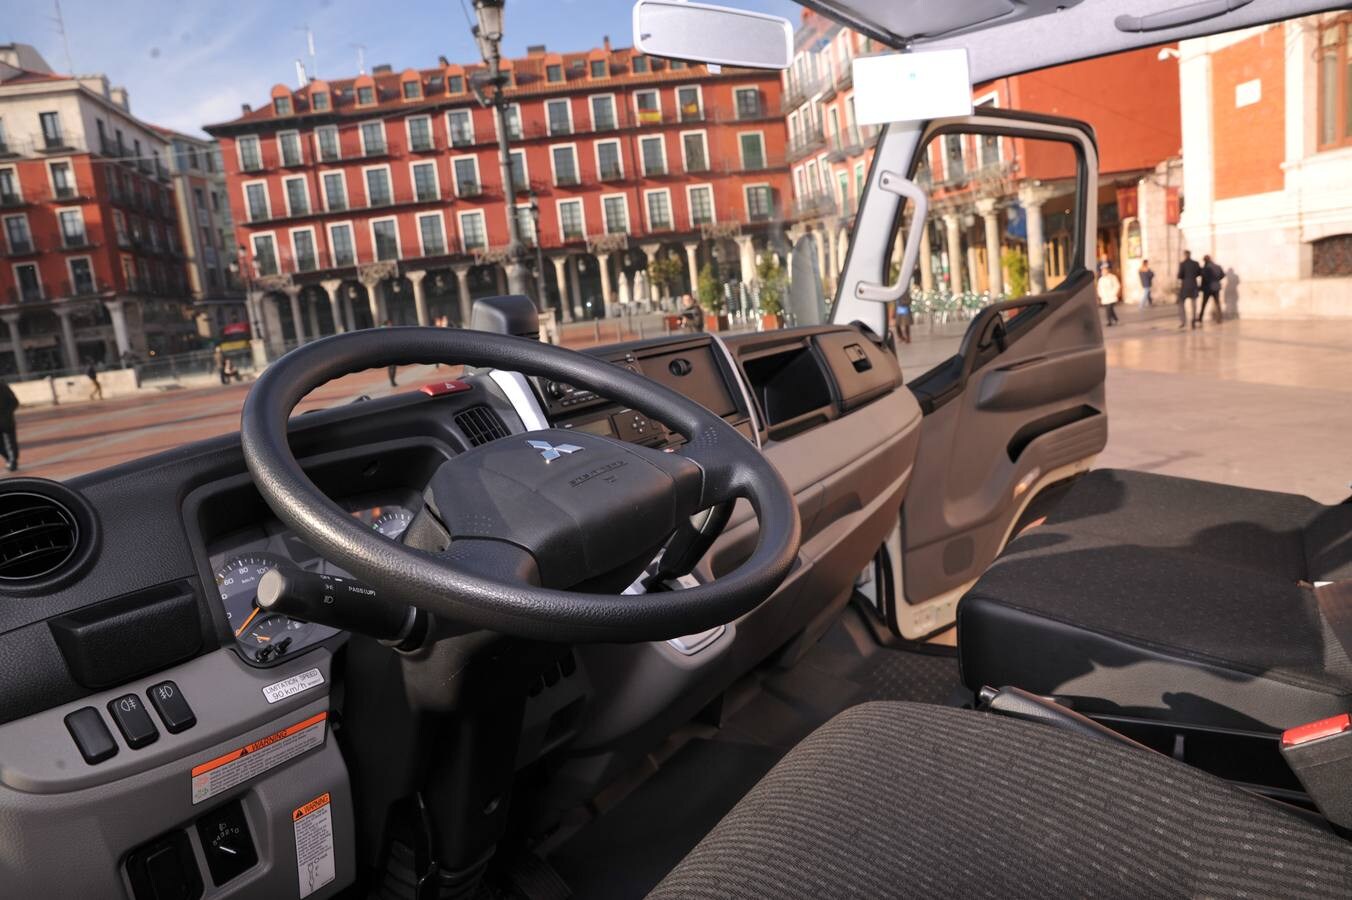 La apuesta del Ayuntamiento de Valladolid por la movilidad sostenible, menos contaminante y con menor consumo suma un nuevo vehículo